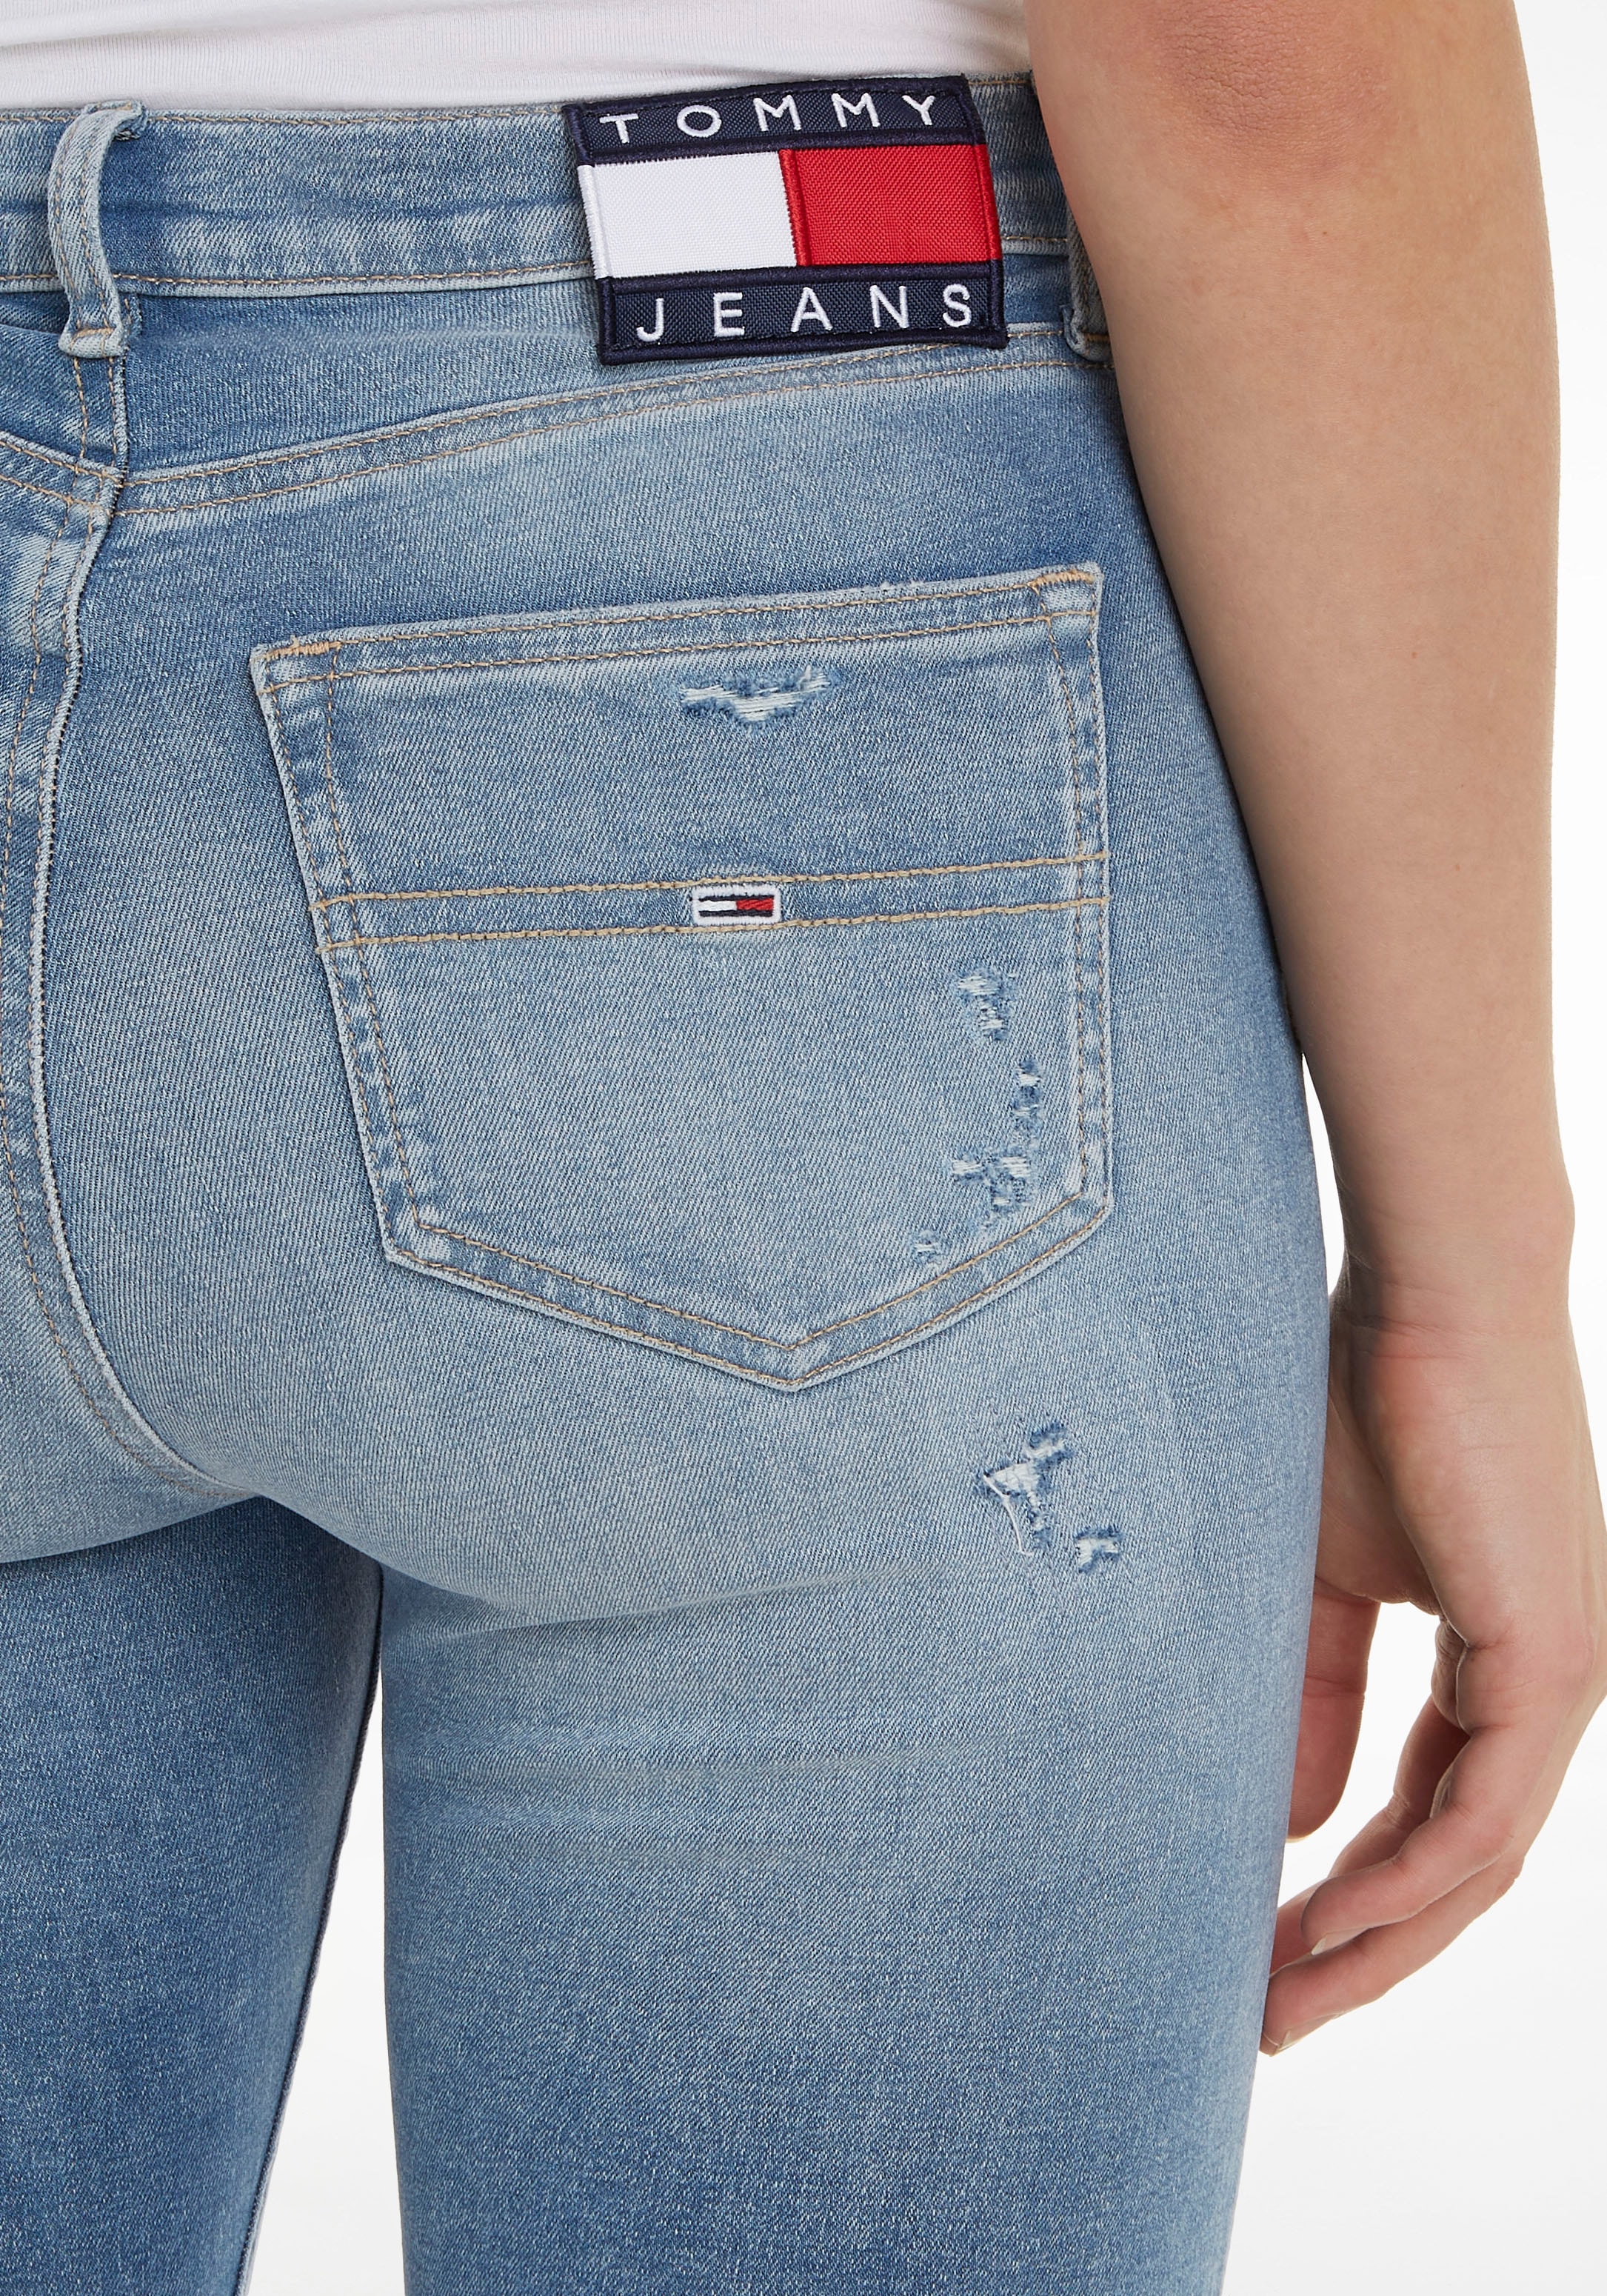 Logostickerei Jeans Tommy Logobadge mit Skinny-fit-Jeans ANK kaufen und für HR »SYLVIA SSKN BAUR | CG7216«,